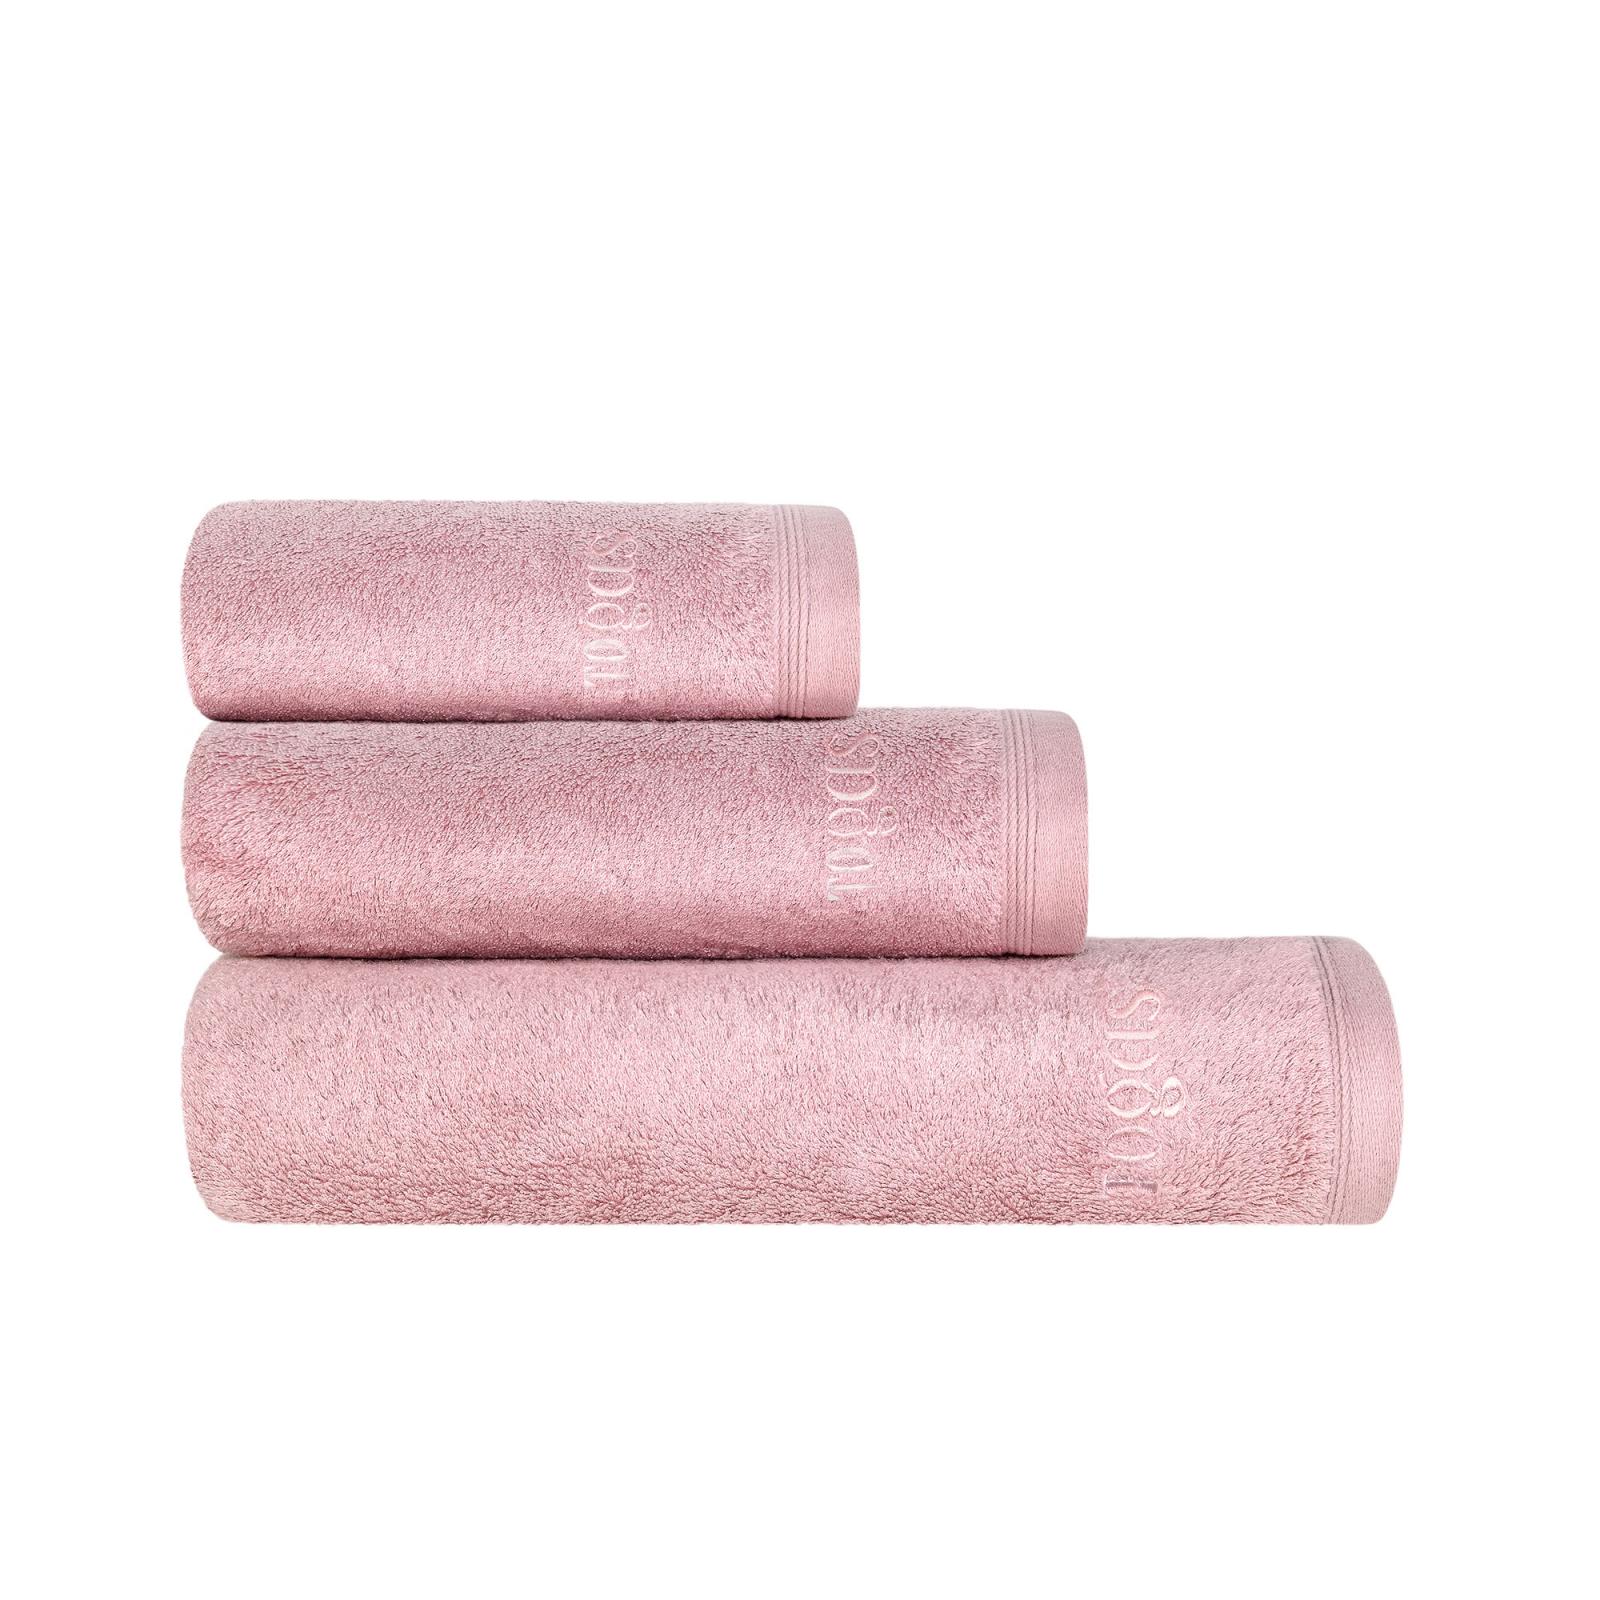 Полотенце 40х60 см Пуатье розовое Togas полотенце togas миа бел экру 40х60